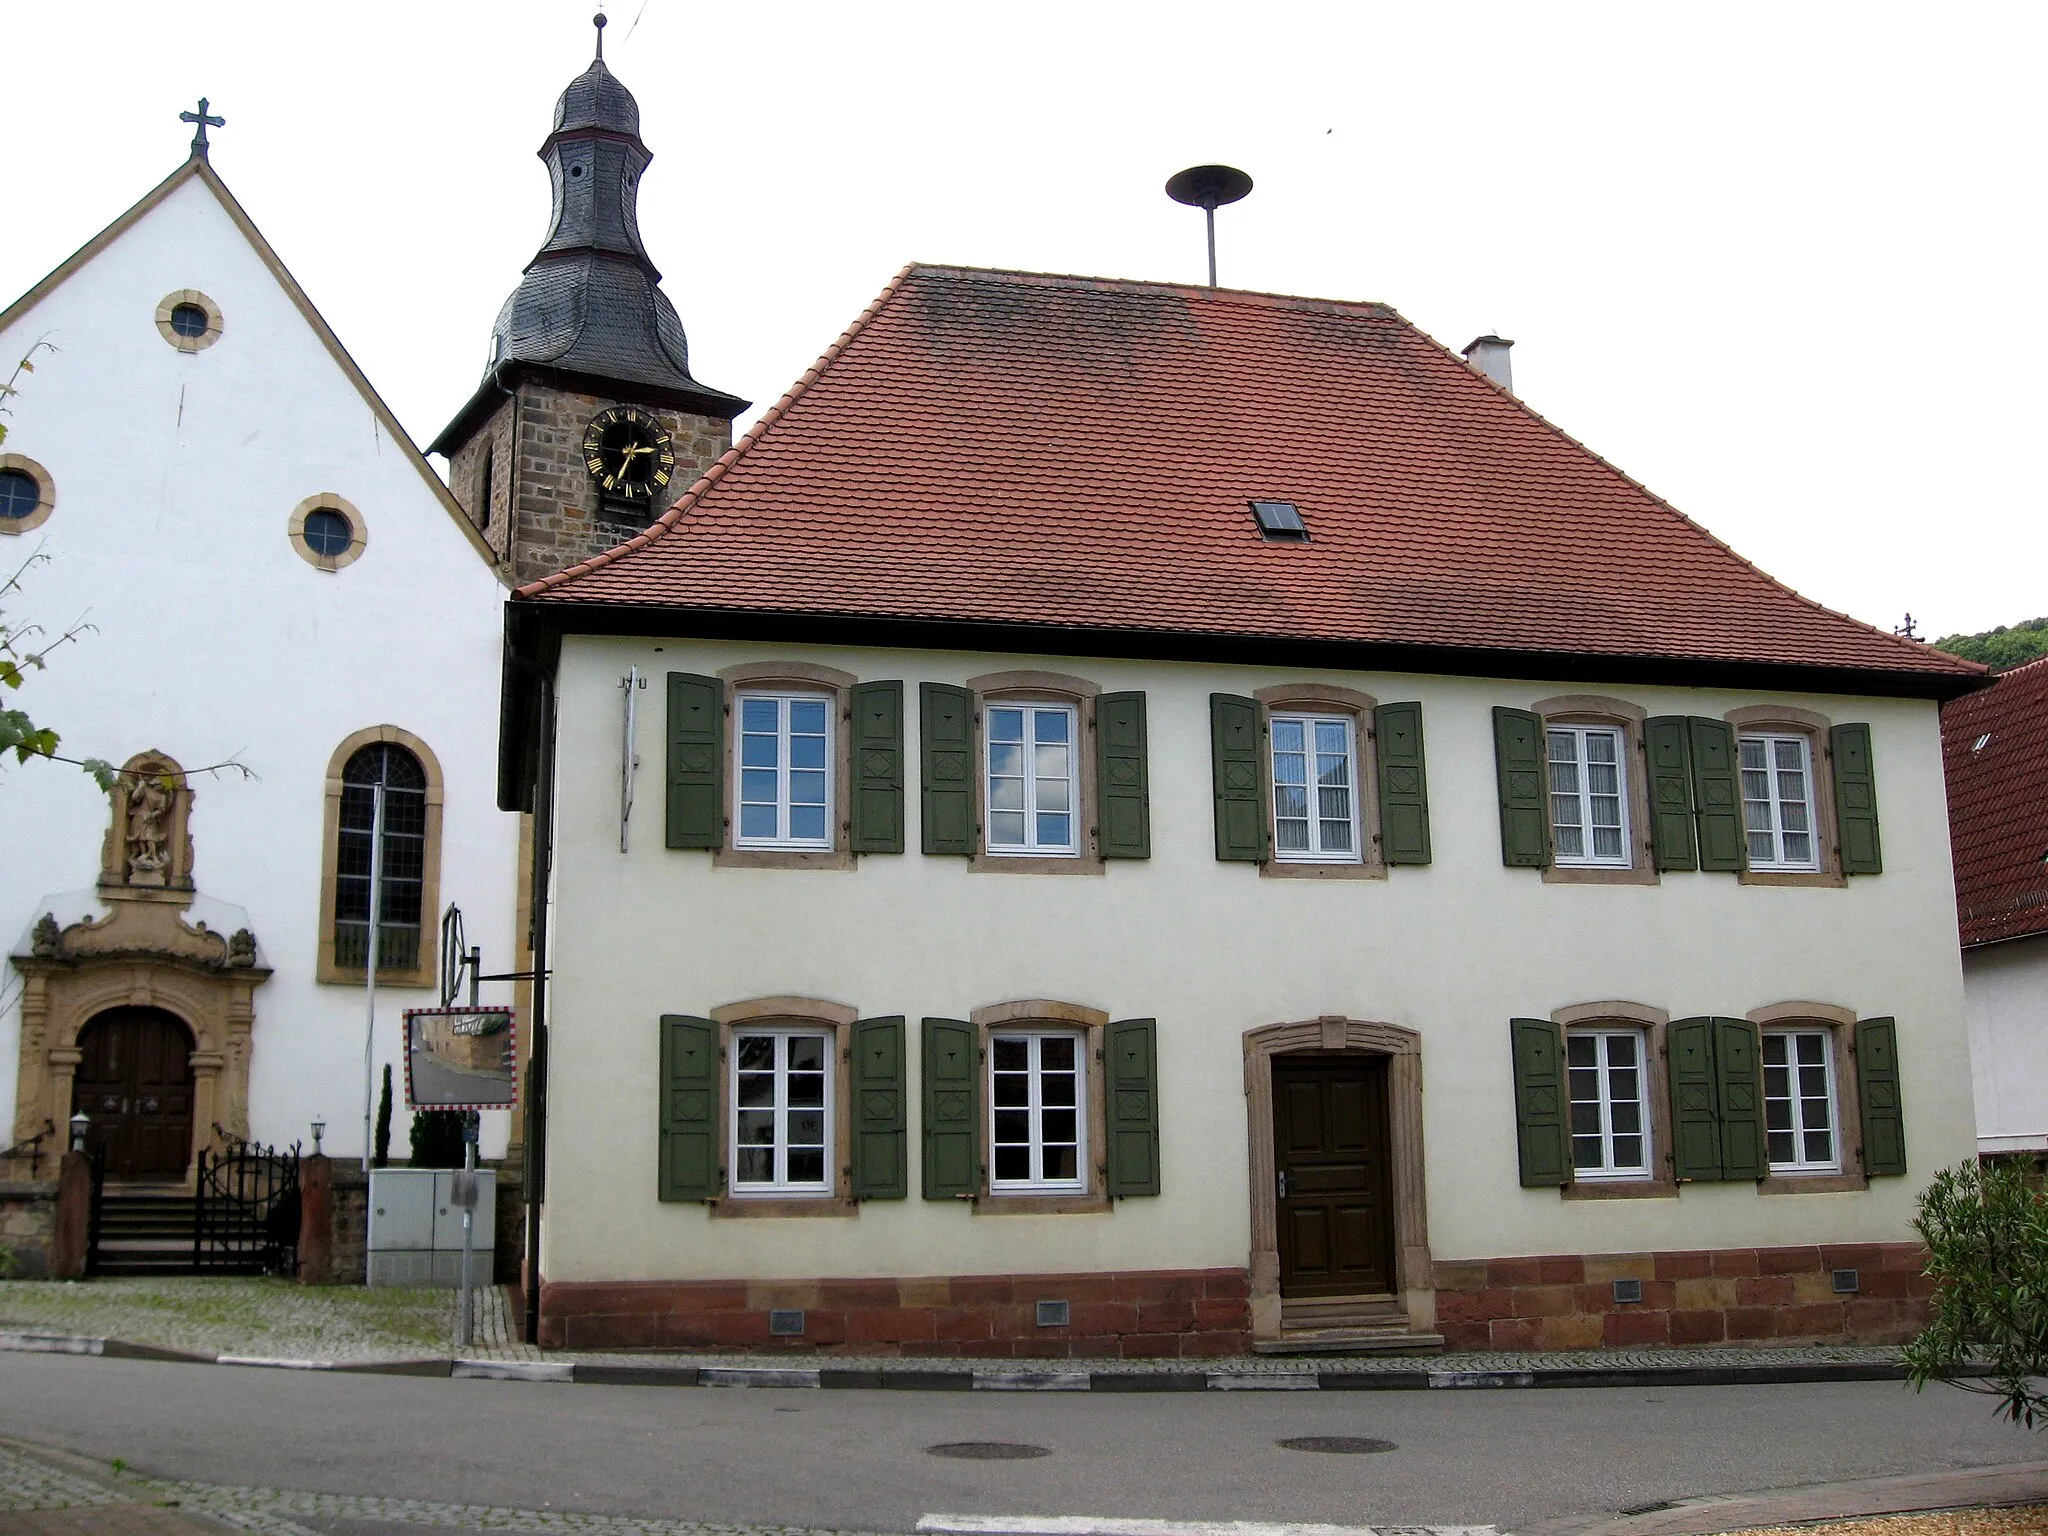 Photo showing: ehemalige Schule, Weinstraße 2 in Pleisweiler, Ortsteil von Pleisweiler-Oberhofen